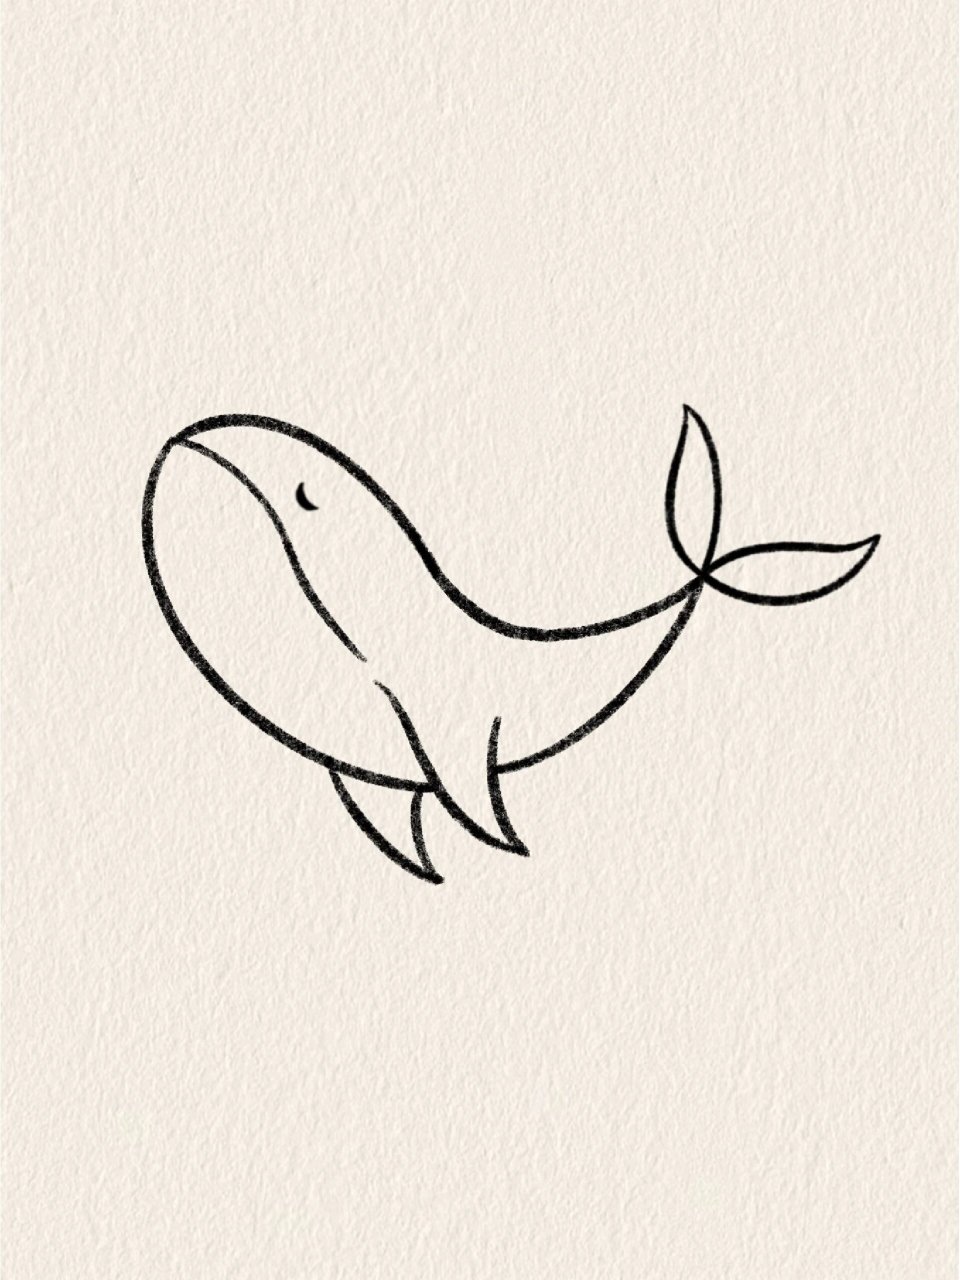 鲸鱼画法简笔画步骤图片